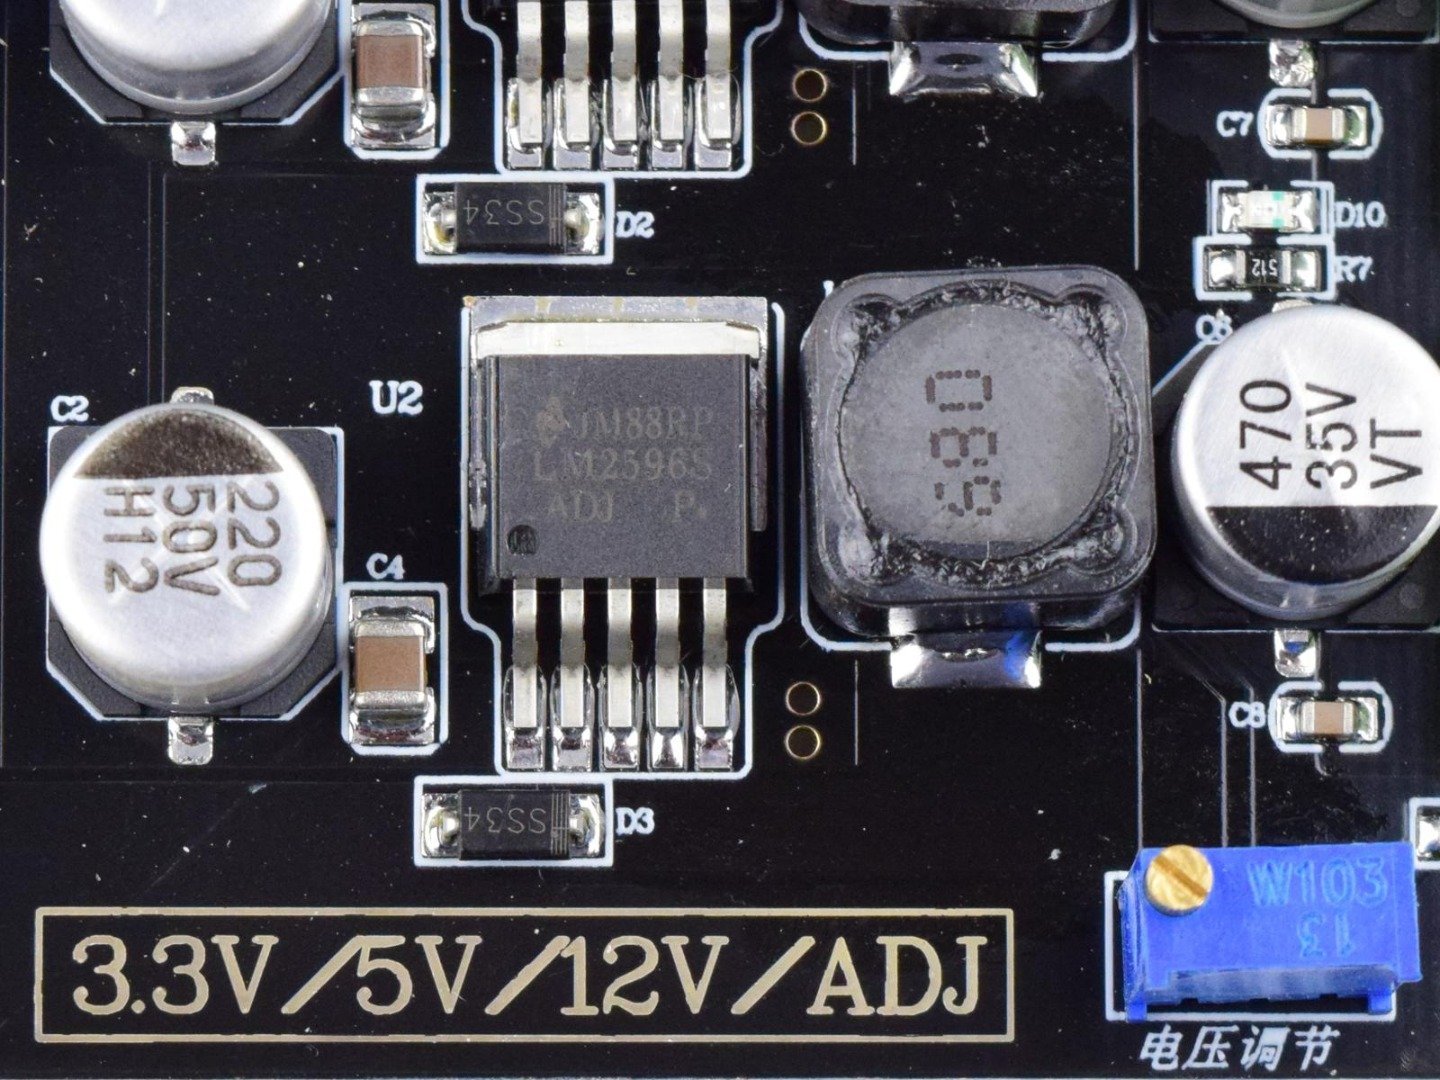 4 Channel Power Supply DC-DC Converter Module with LM2596 3.3V – 5V – 12V – Adjustable 8